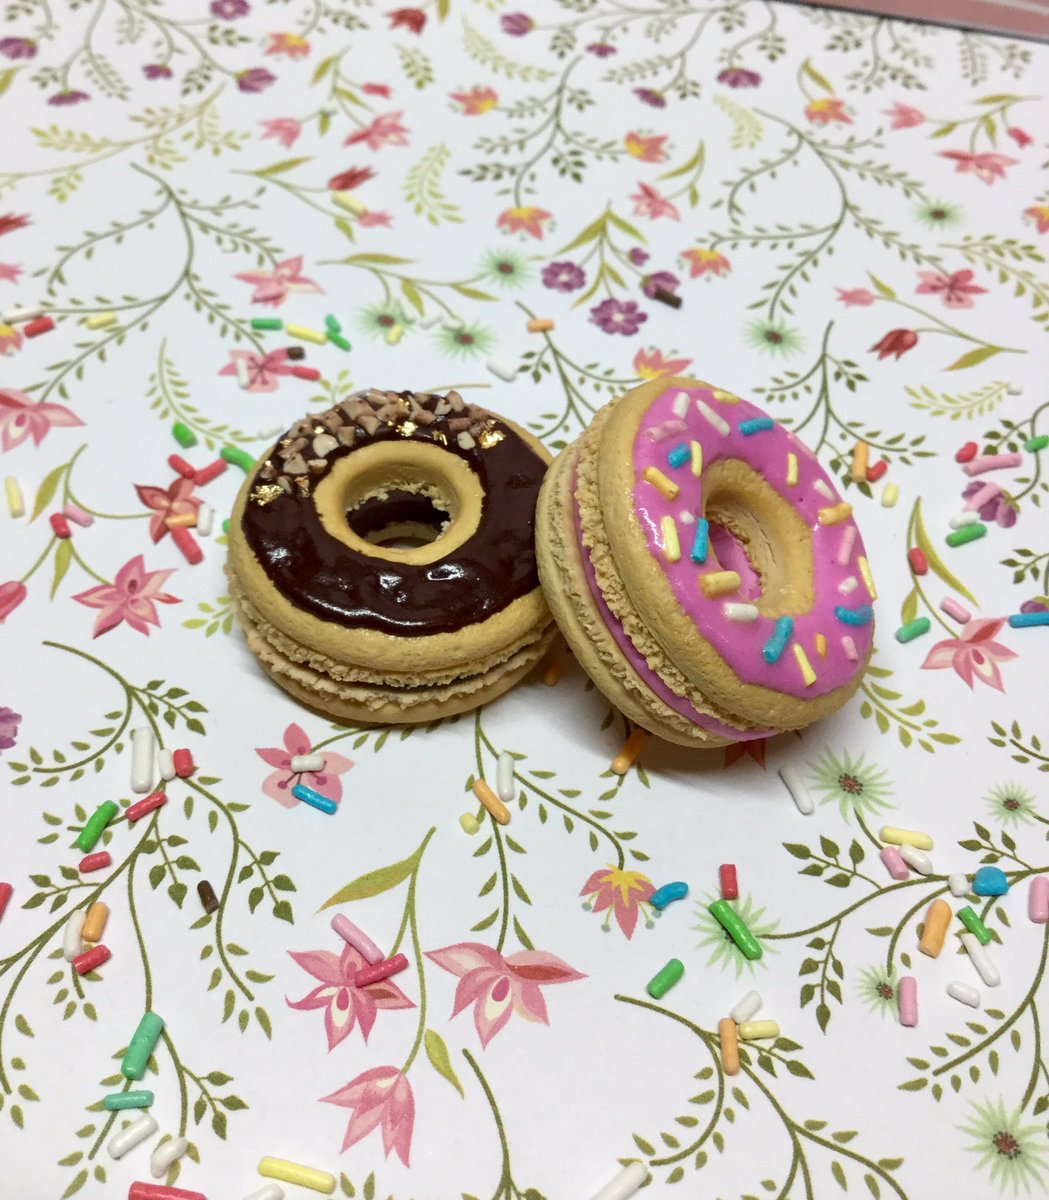 Salut !❤️ Voici deux macarons donuts 🍩 J’espère qu’ils vous plaisent 😁

#fimo #fimocreations #fimocreation #fimoart #creation #crea #creative #macarons #donuts #donuts🍩 #food #gourmandise #gourmandises #gourmand #art #porteclef #gateaux #biscuits #biscuit #chocolat #chocolate